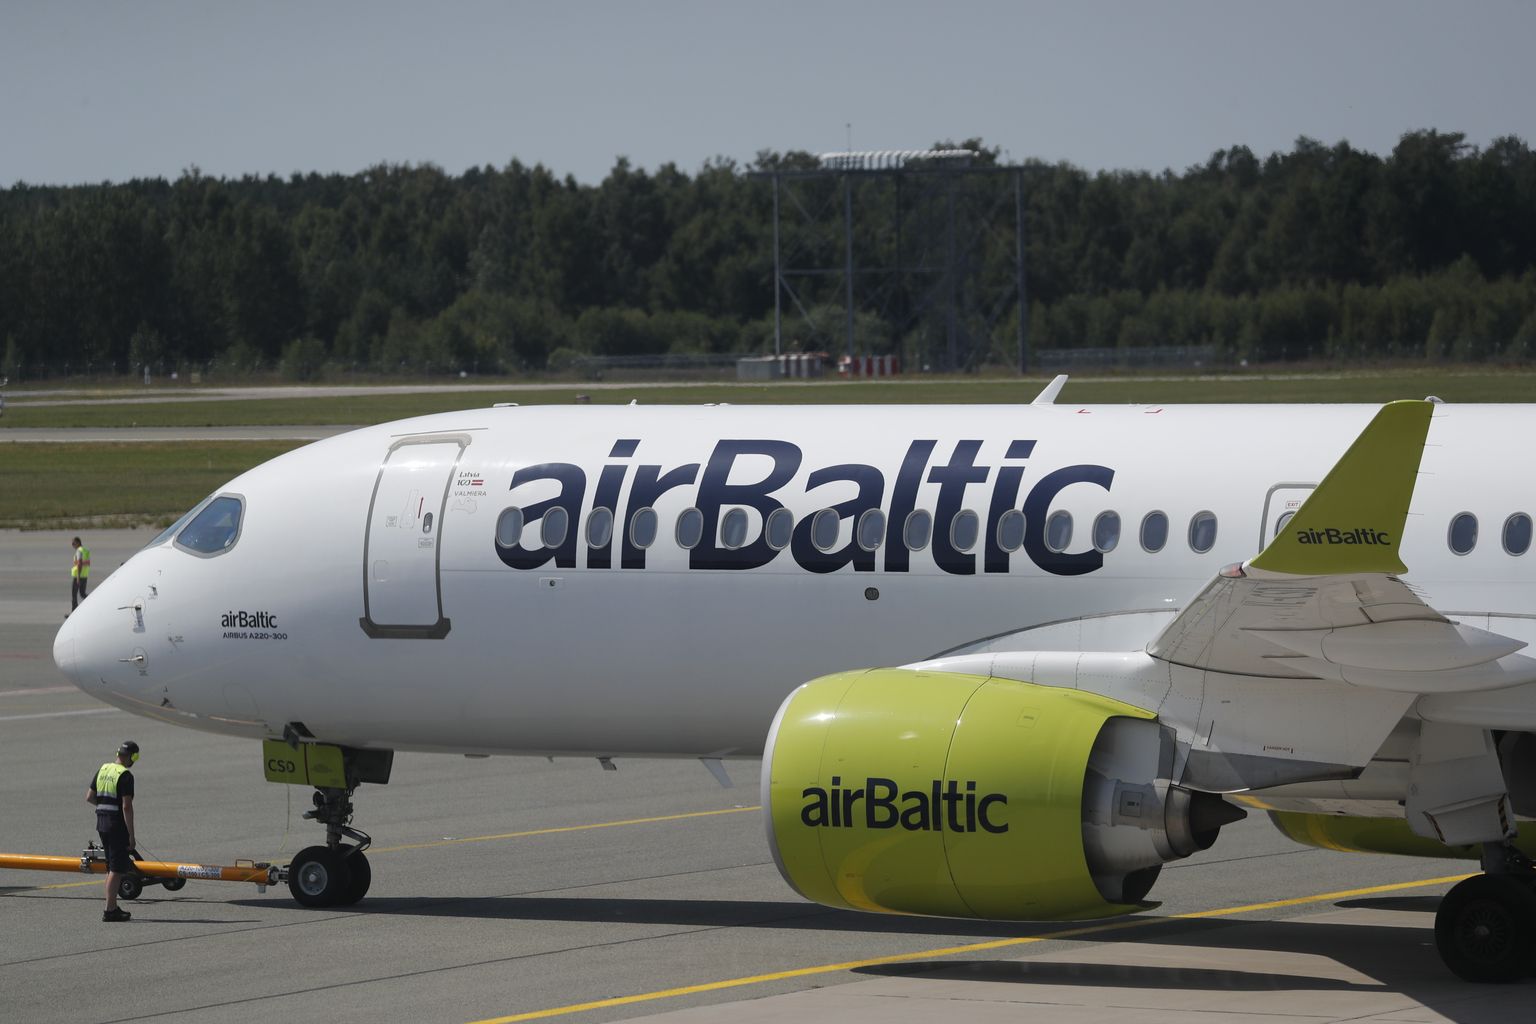 AirBalticu lennuk. Pilt on illustratiivne.